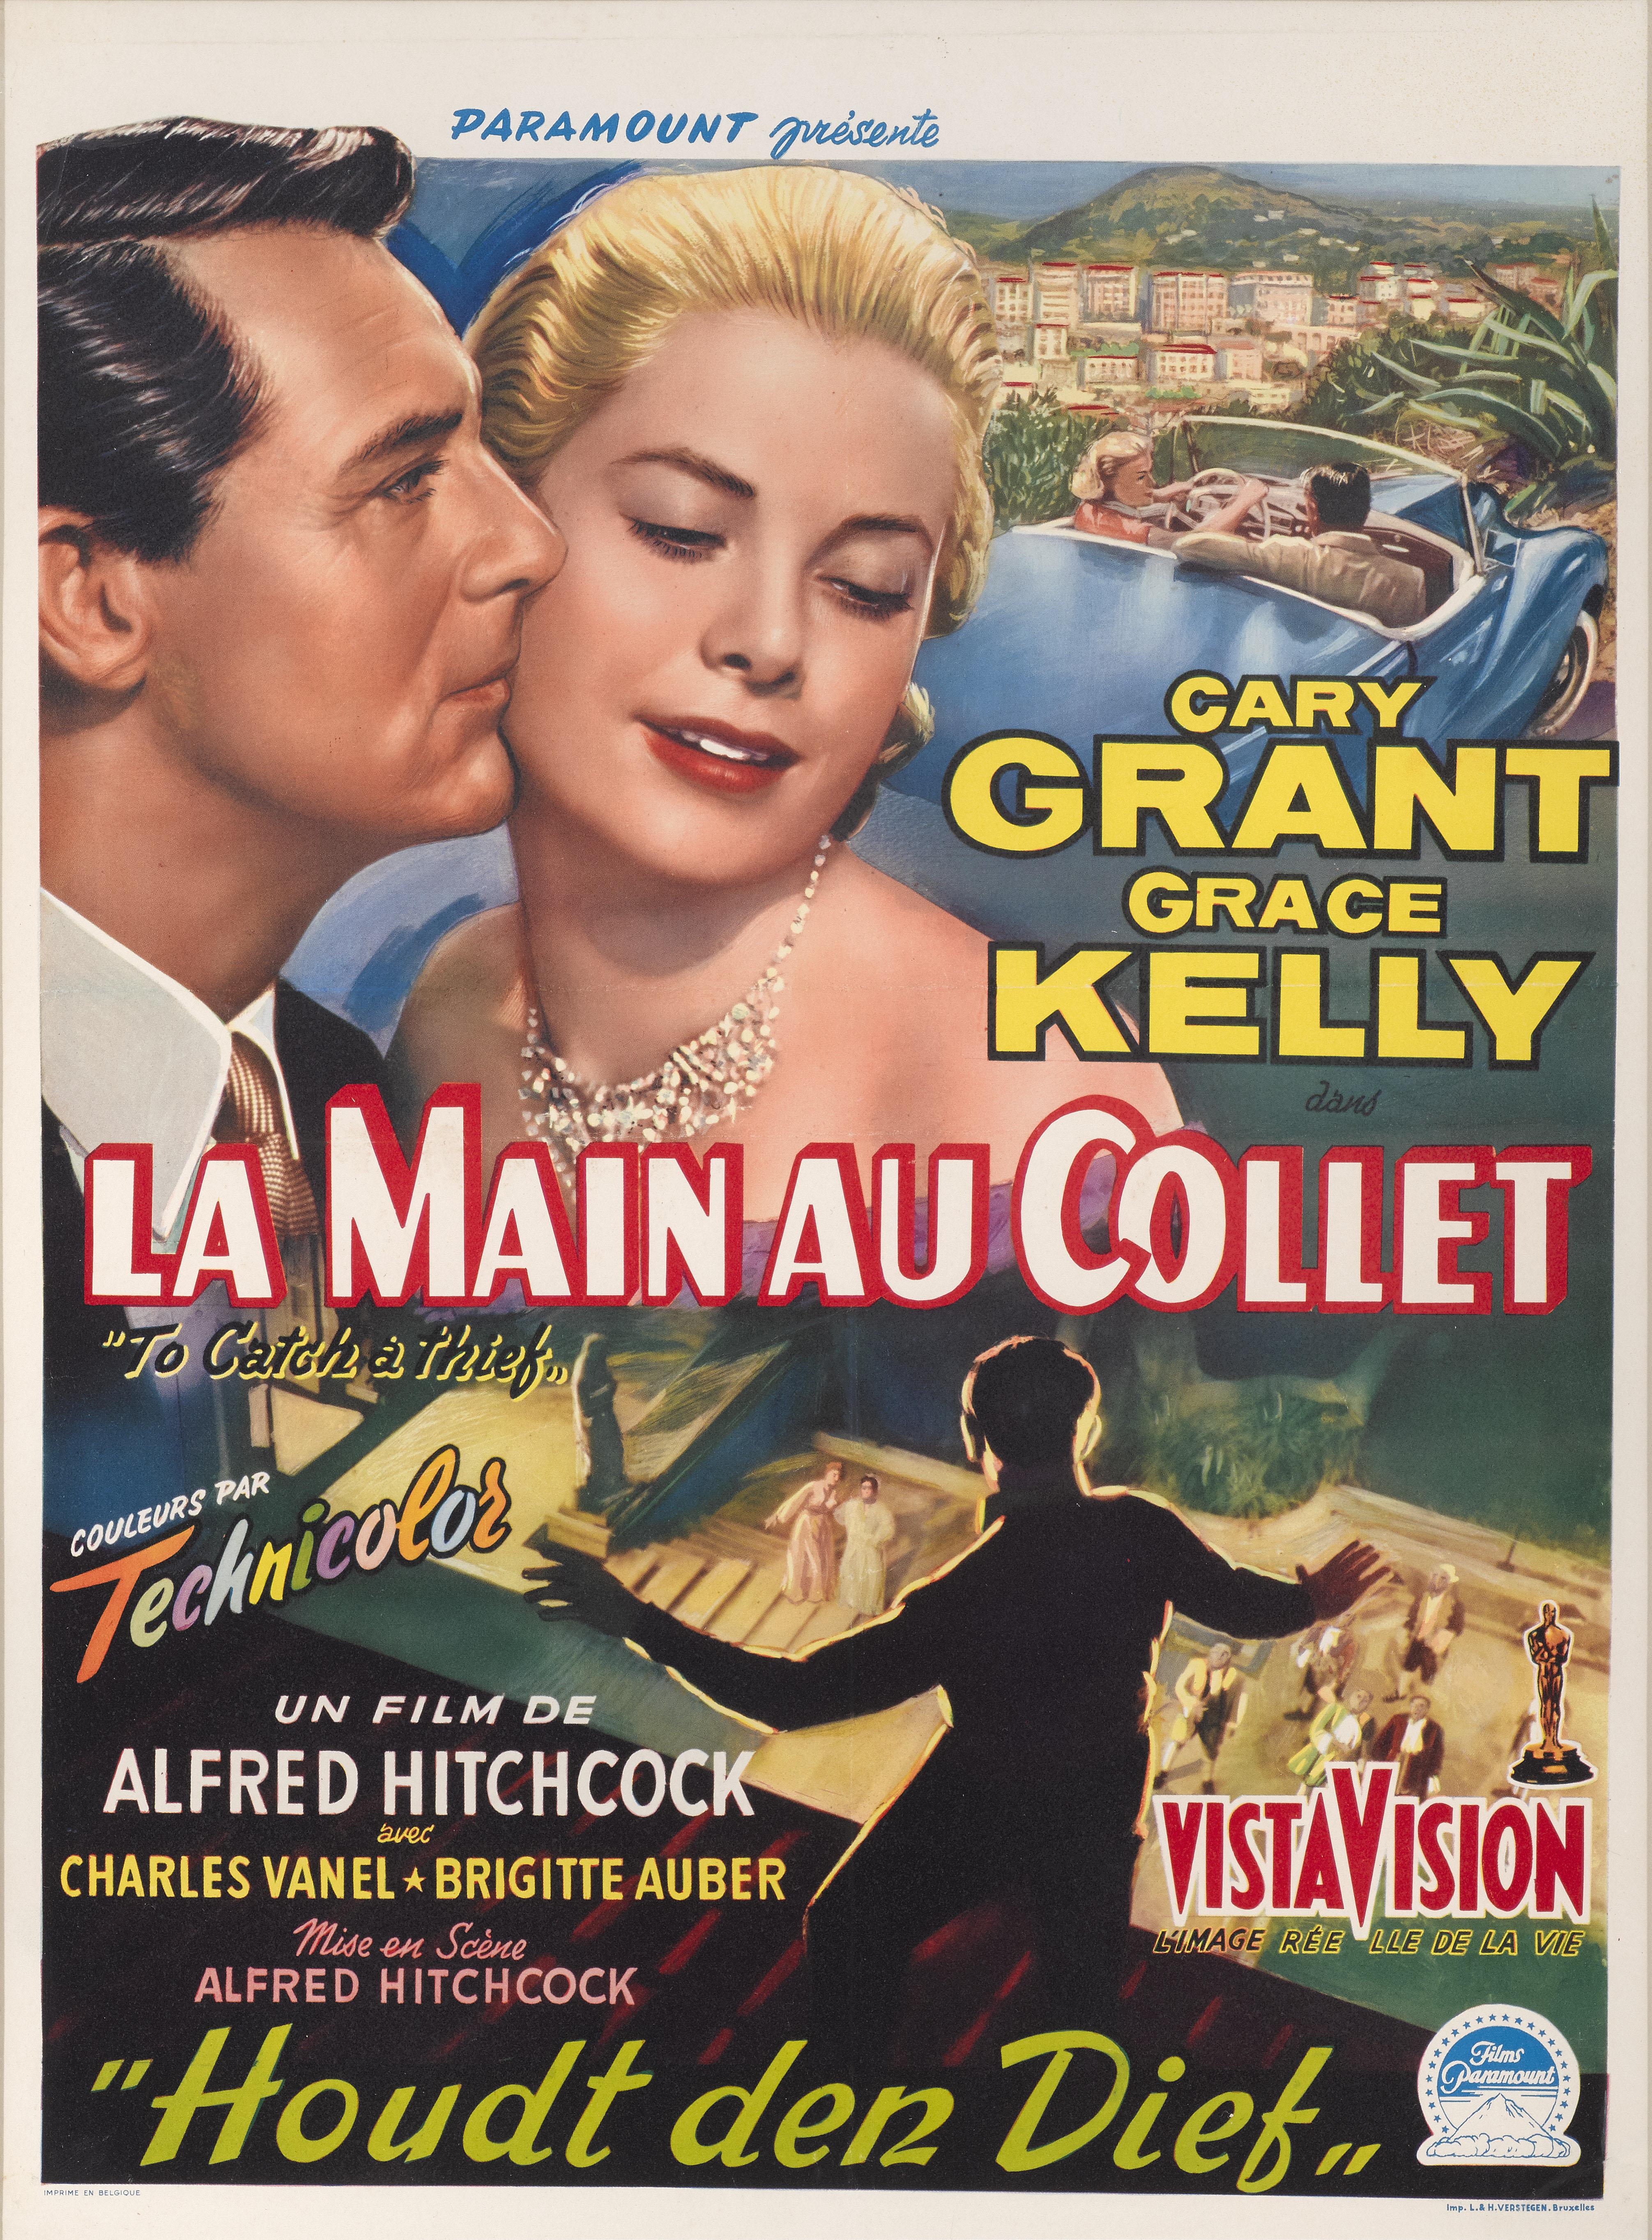 Original belgisches Filmplakat für Alfred Hitchcocks 1955 erschienenen romantischen Krimi-Klassiker mit Cary's Grant und Grace Kelly in den Hauptrollen.
Der Film wurde mit einem Oscar für die beste Kameraführung (Robert Burks) ausgezeichnet.
Dieses